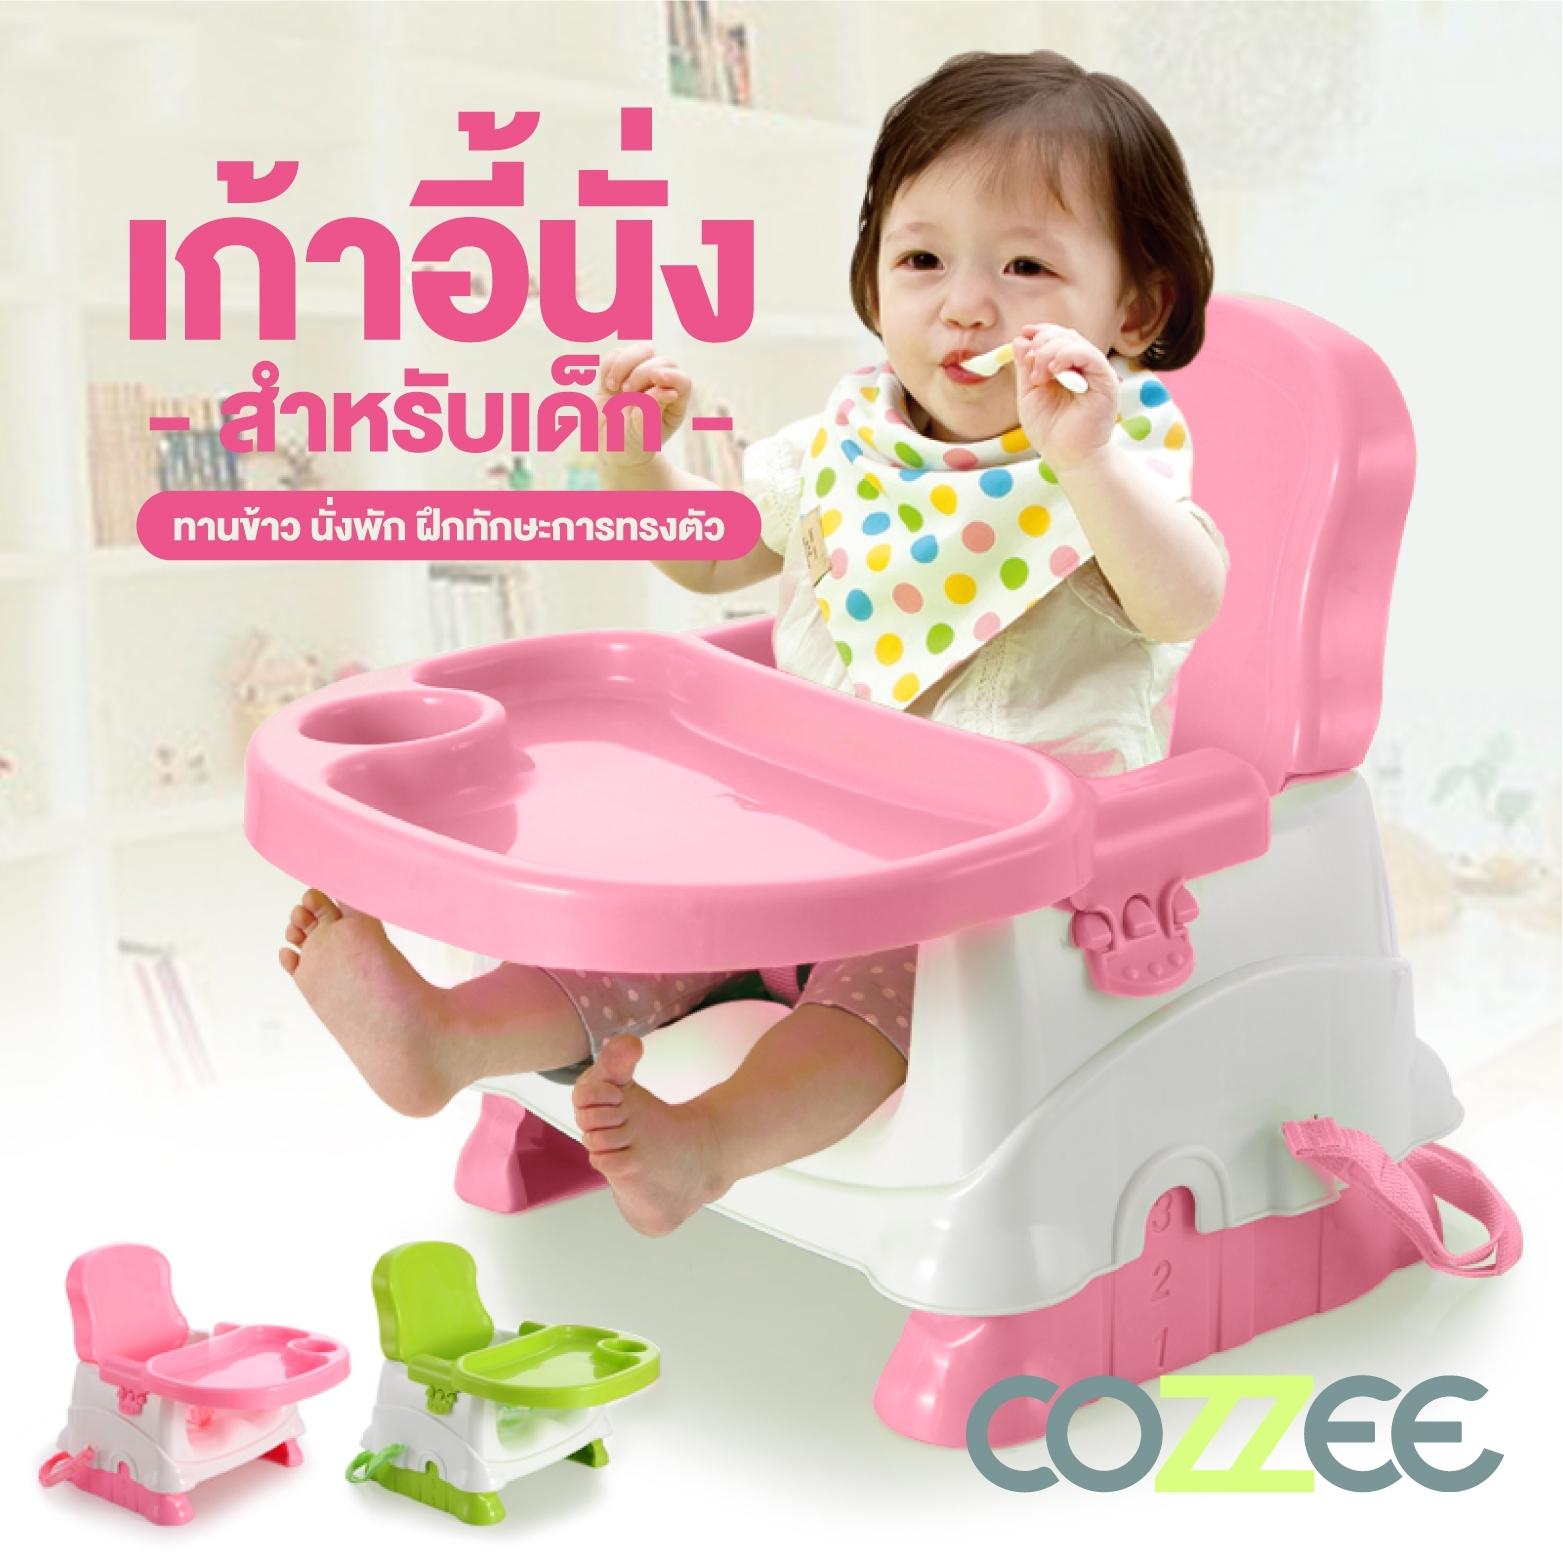 COZZEE เก้าอี้กินข้าวเด็กแบบพกพา เก้าอี้หัดนั่งเด็ก เก้าอี้ฝึกการทรงตัวเด็ก เก้าอี้เด็กนั่งกินข้าว รุ่น Baby Chair BH-503